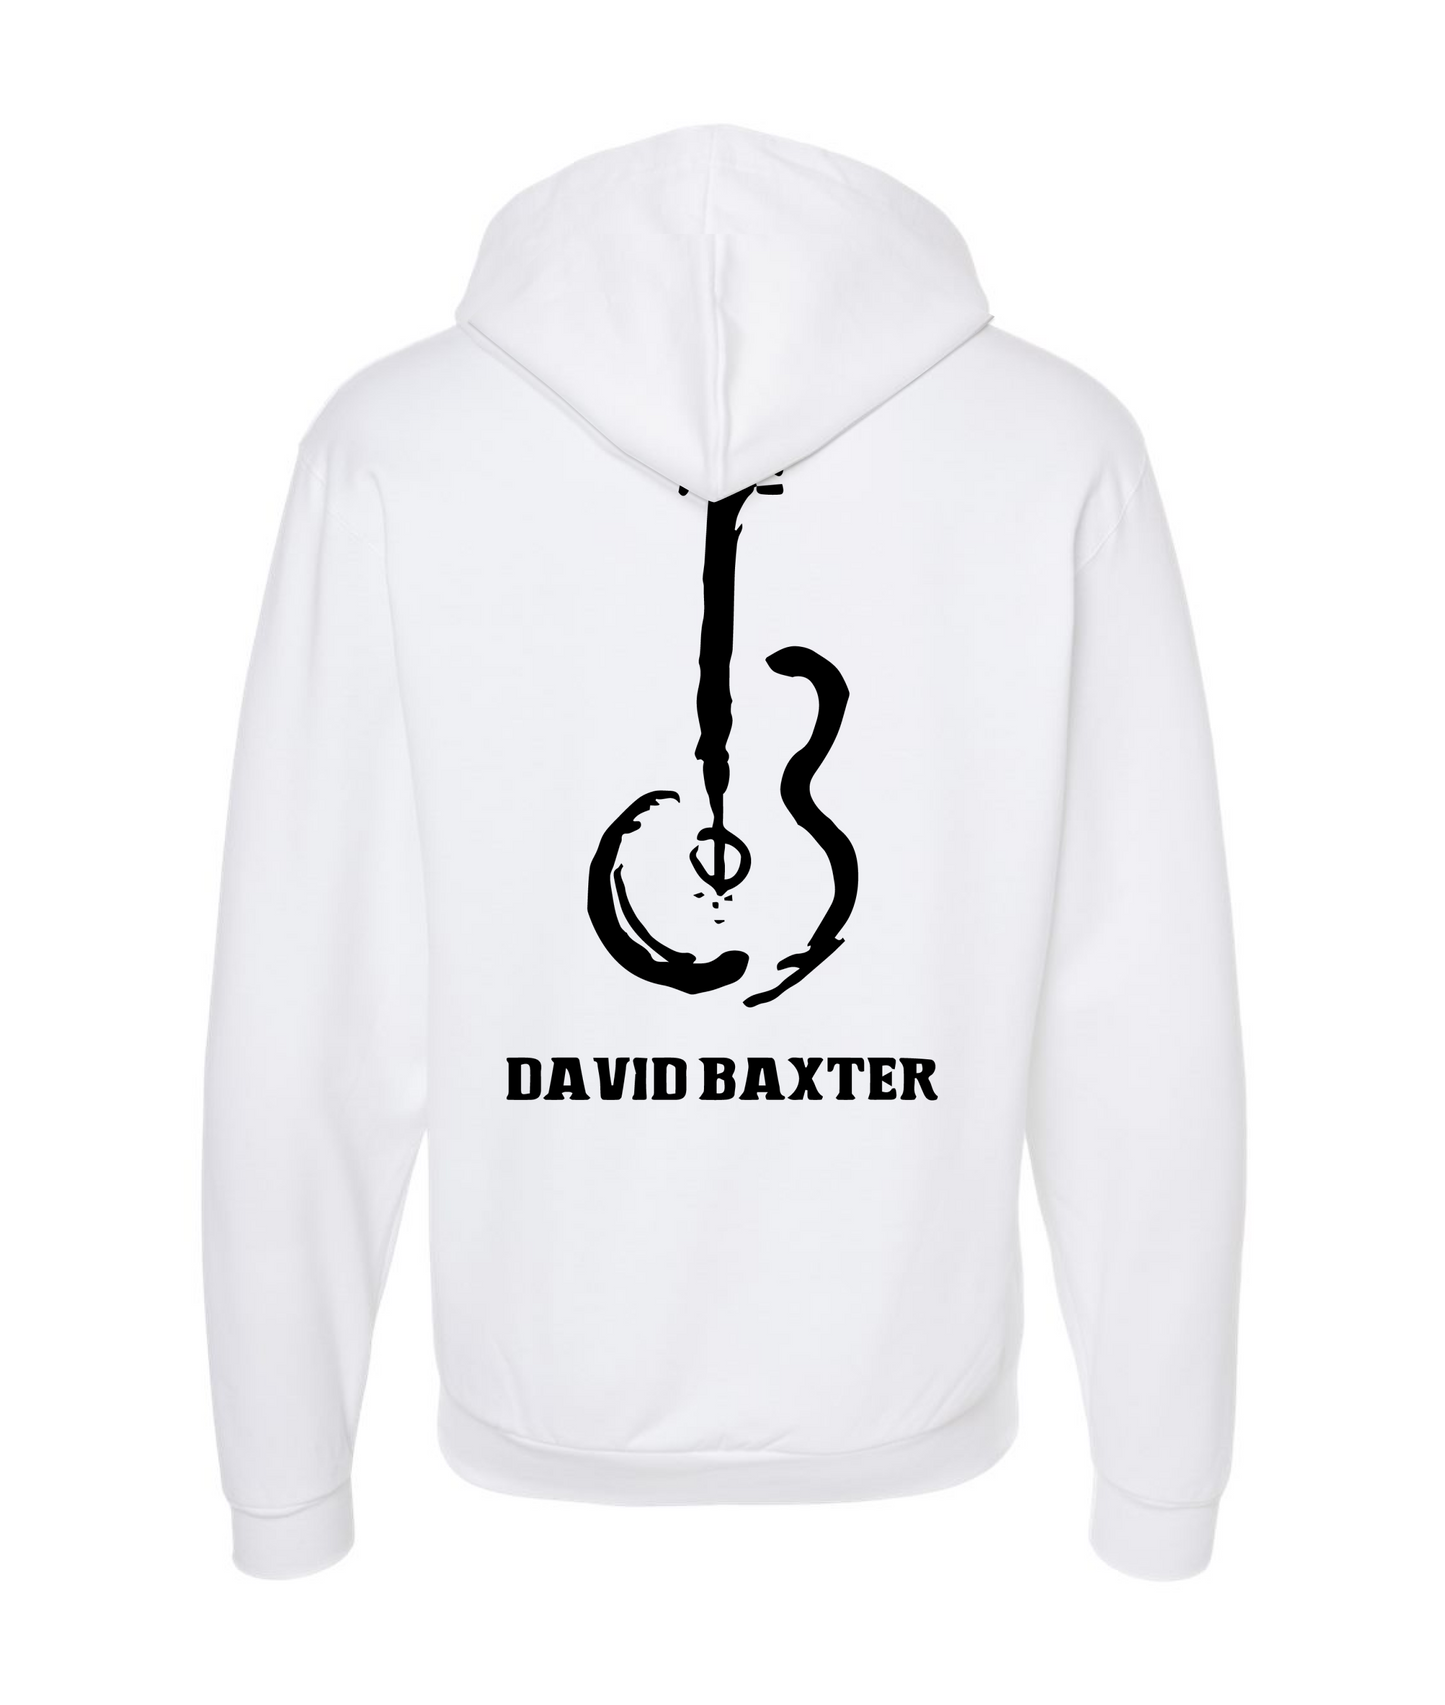 David Wayne Baxter - Guitar Logo - White Zip Hoodie